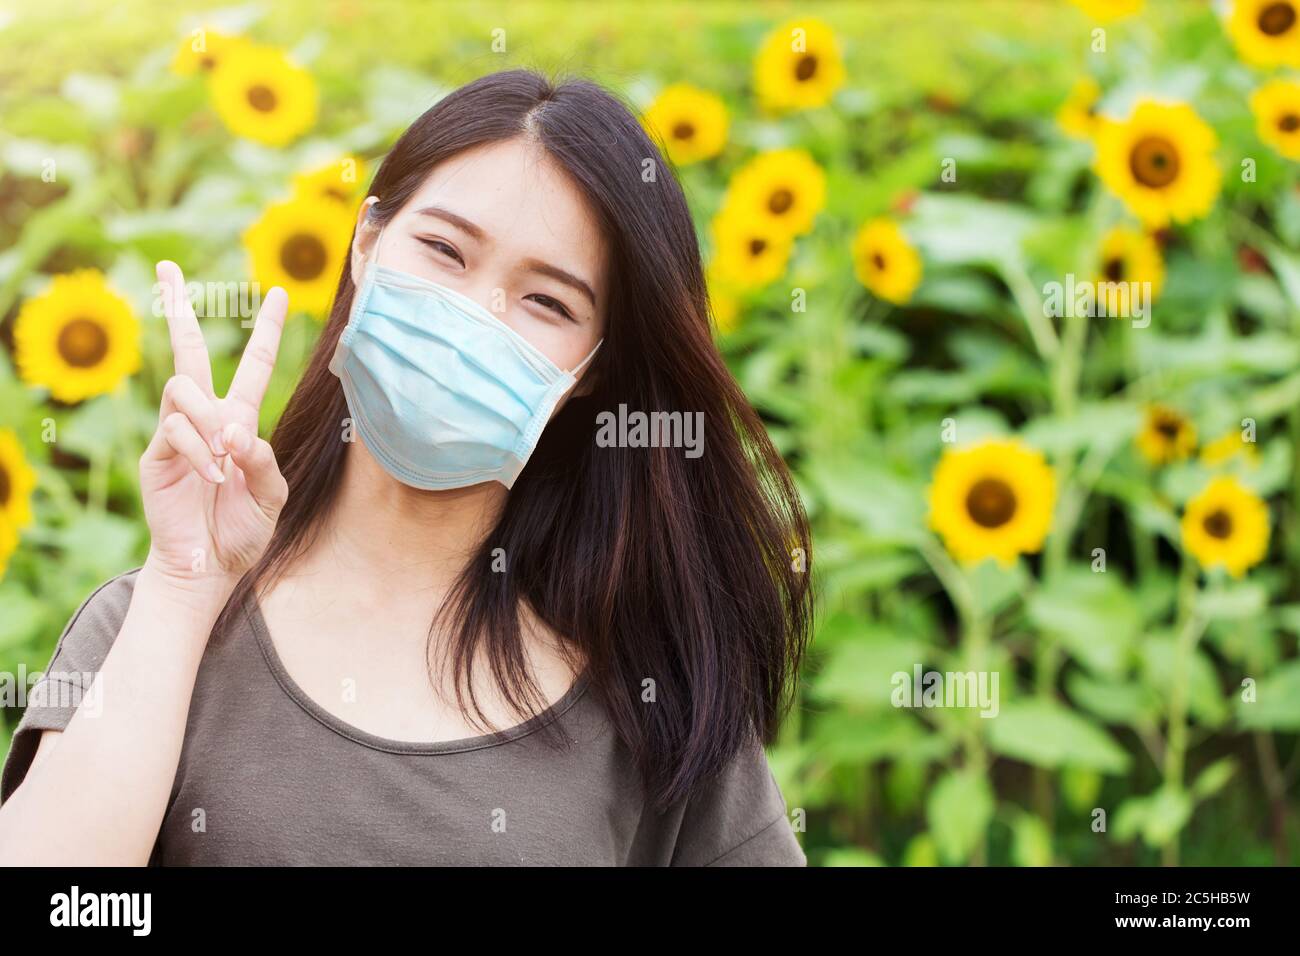 Nettes Mädchen Teen glücklich Ware Gesichtsmaske für Schutz Coronavirus (Covid-19) oder Luftverschmutzung oder Blütenpollen Allergie auf Sonnenblumen Park Hintergrund Stockfoto